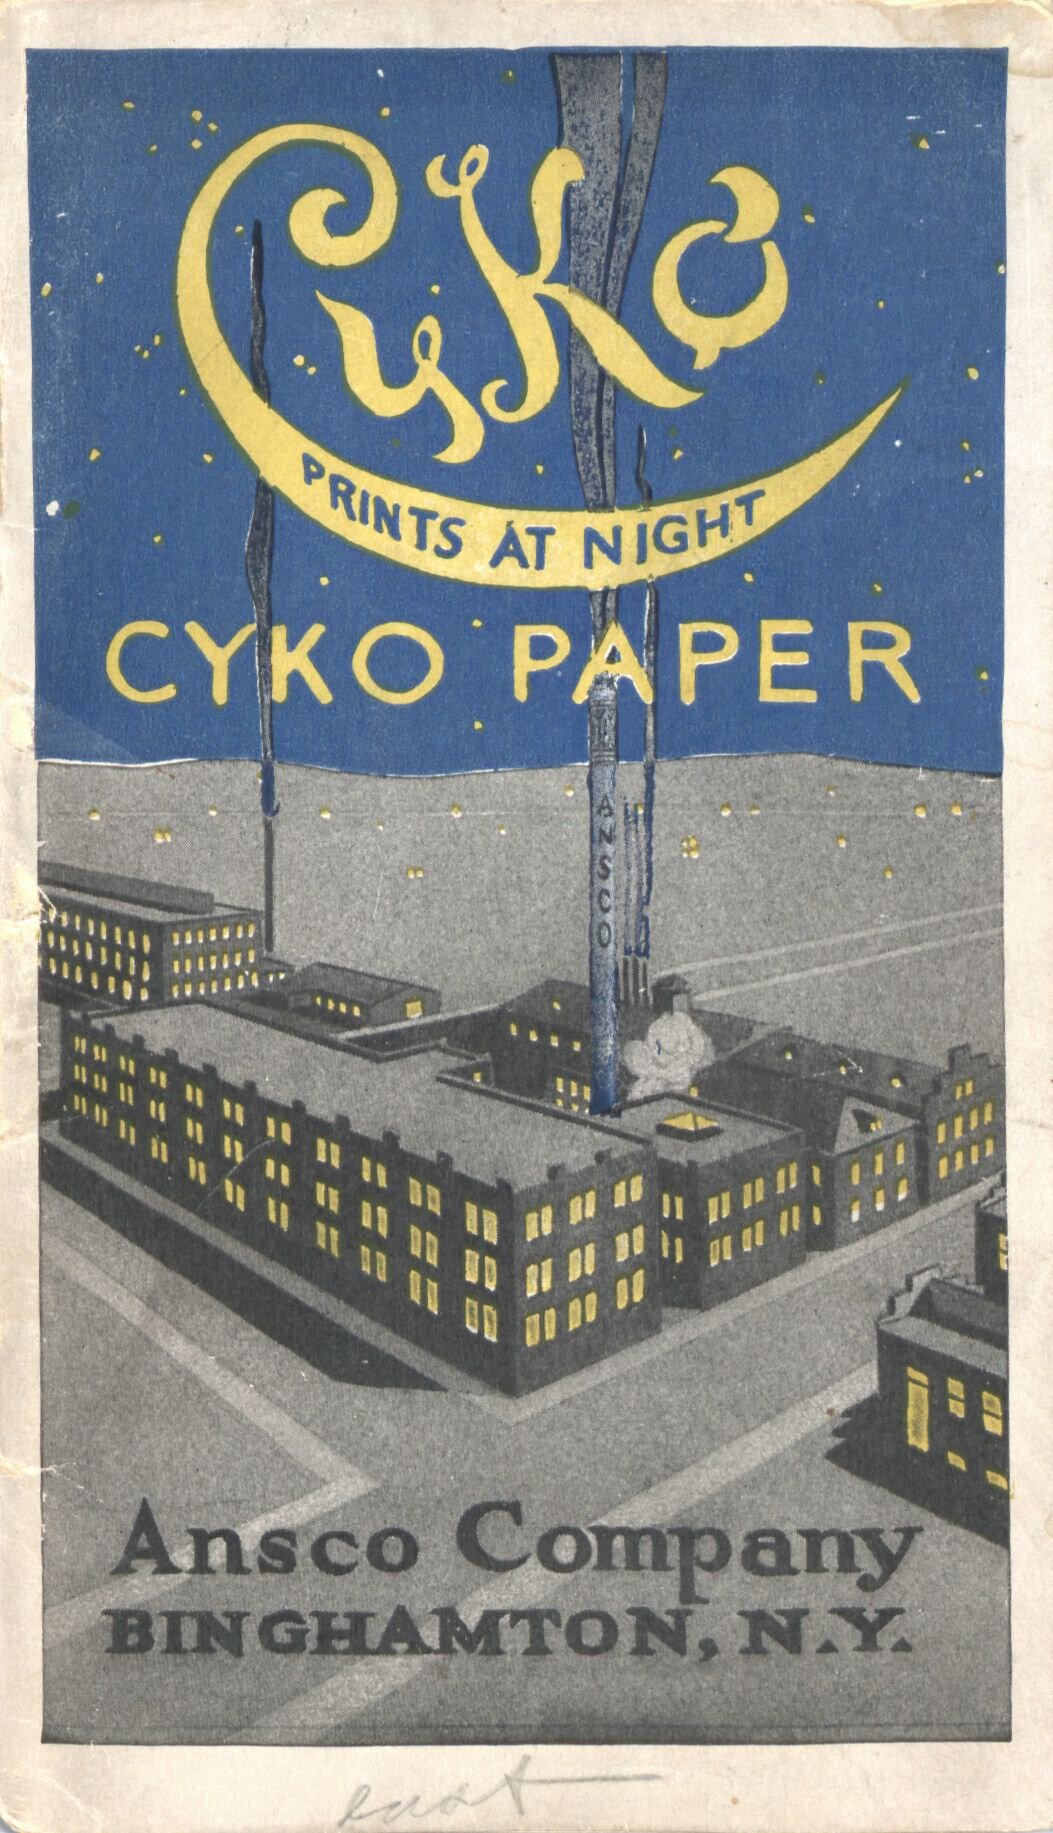     Cyko: The Positive of Photography    &nbsp;(Binghampton, NY: Ansco Company, 1914).  